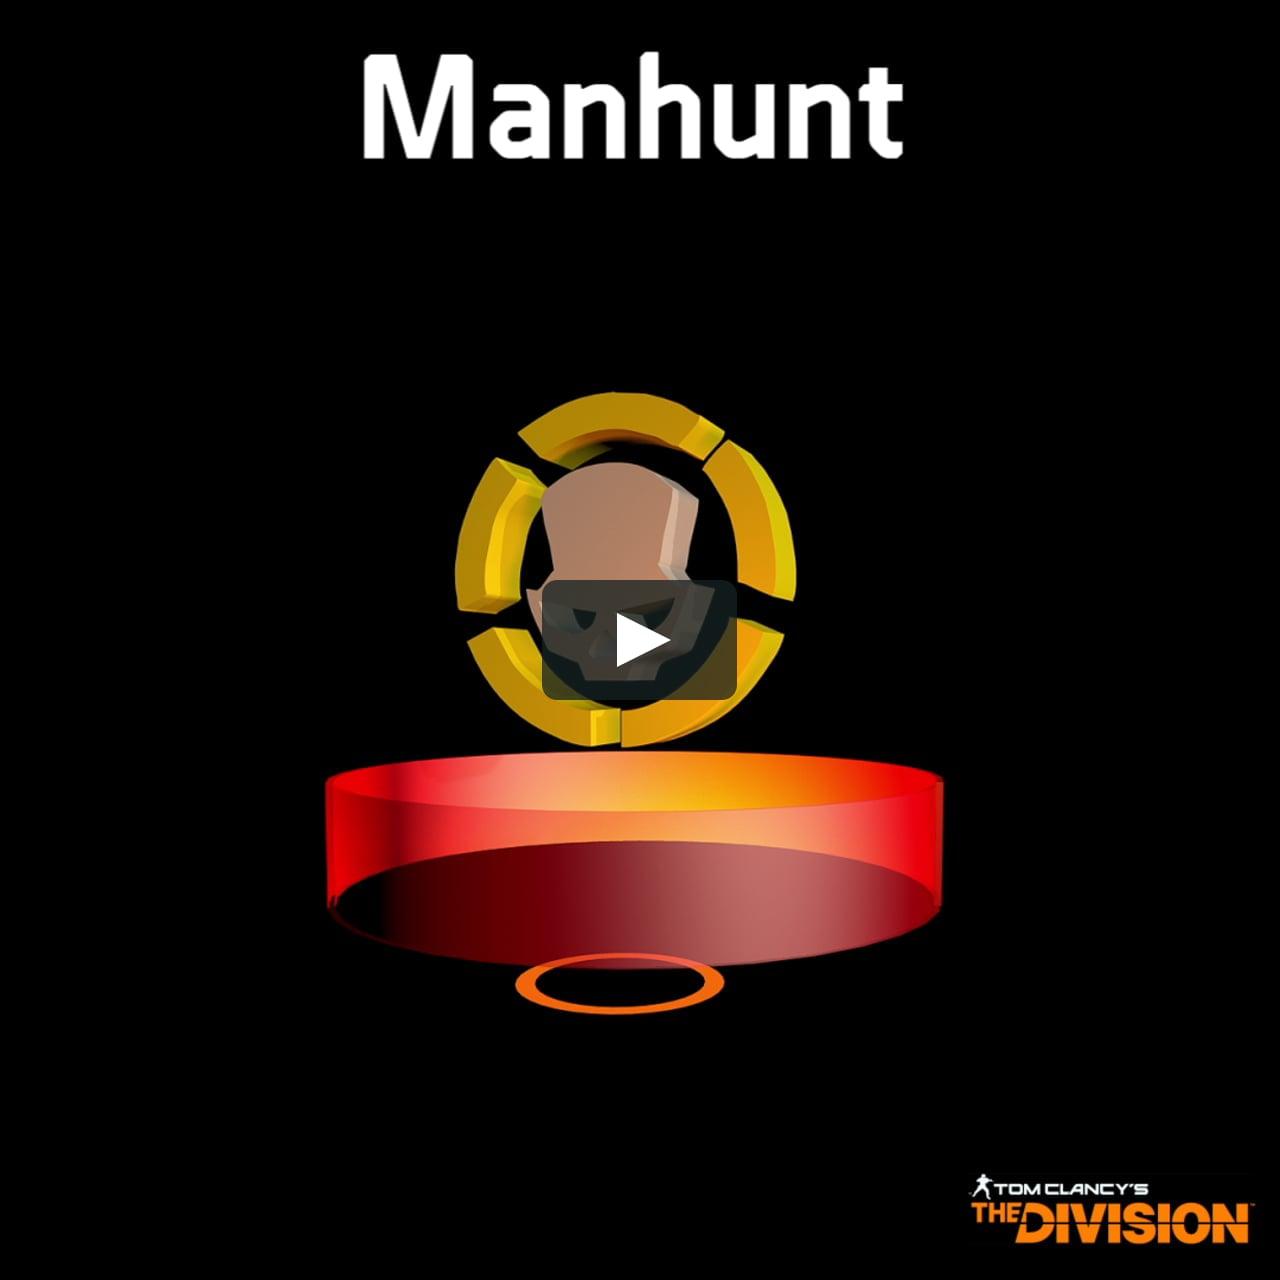 The Division MANHUNT Logo - The Division - ManHunt Symbol. on Vimeo